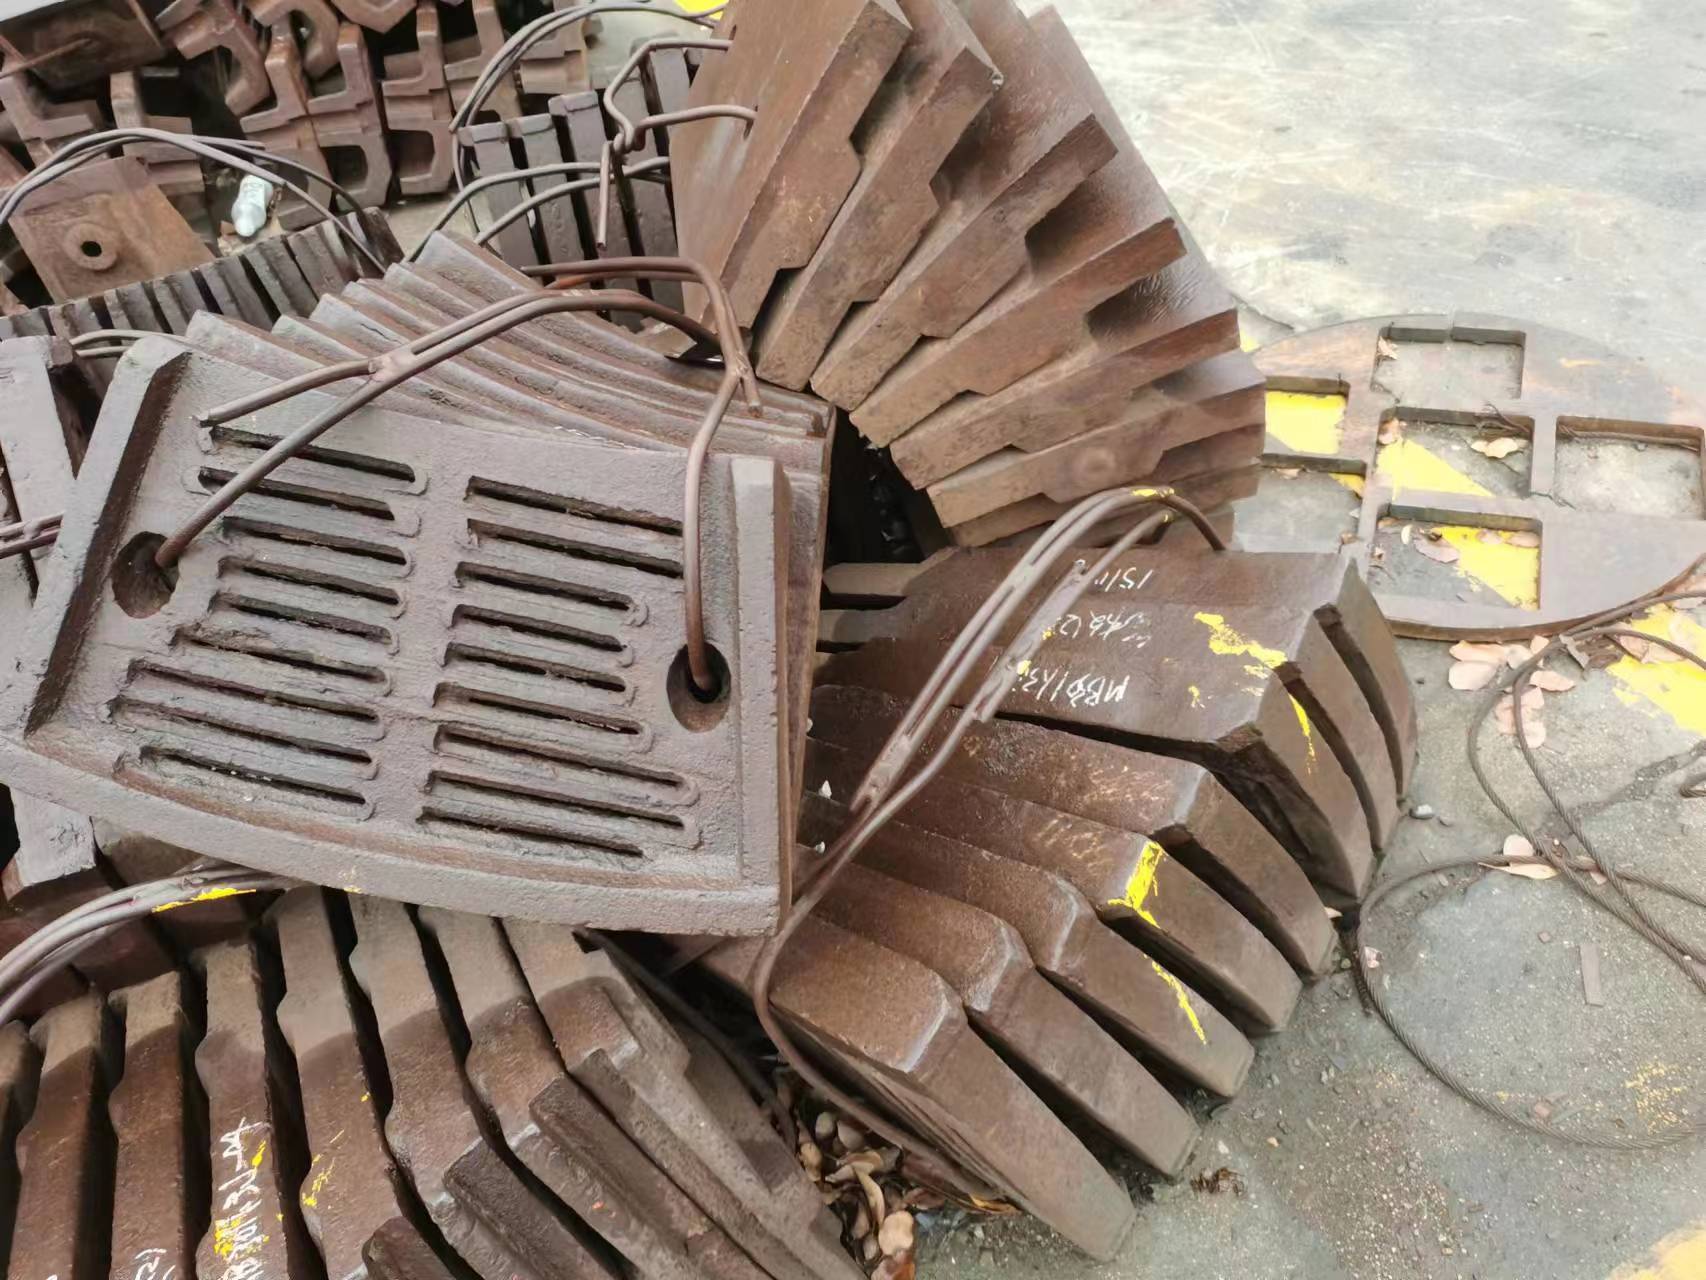 铜川铸钢铸件铸造厂钢轮齿轮加工